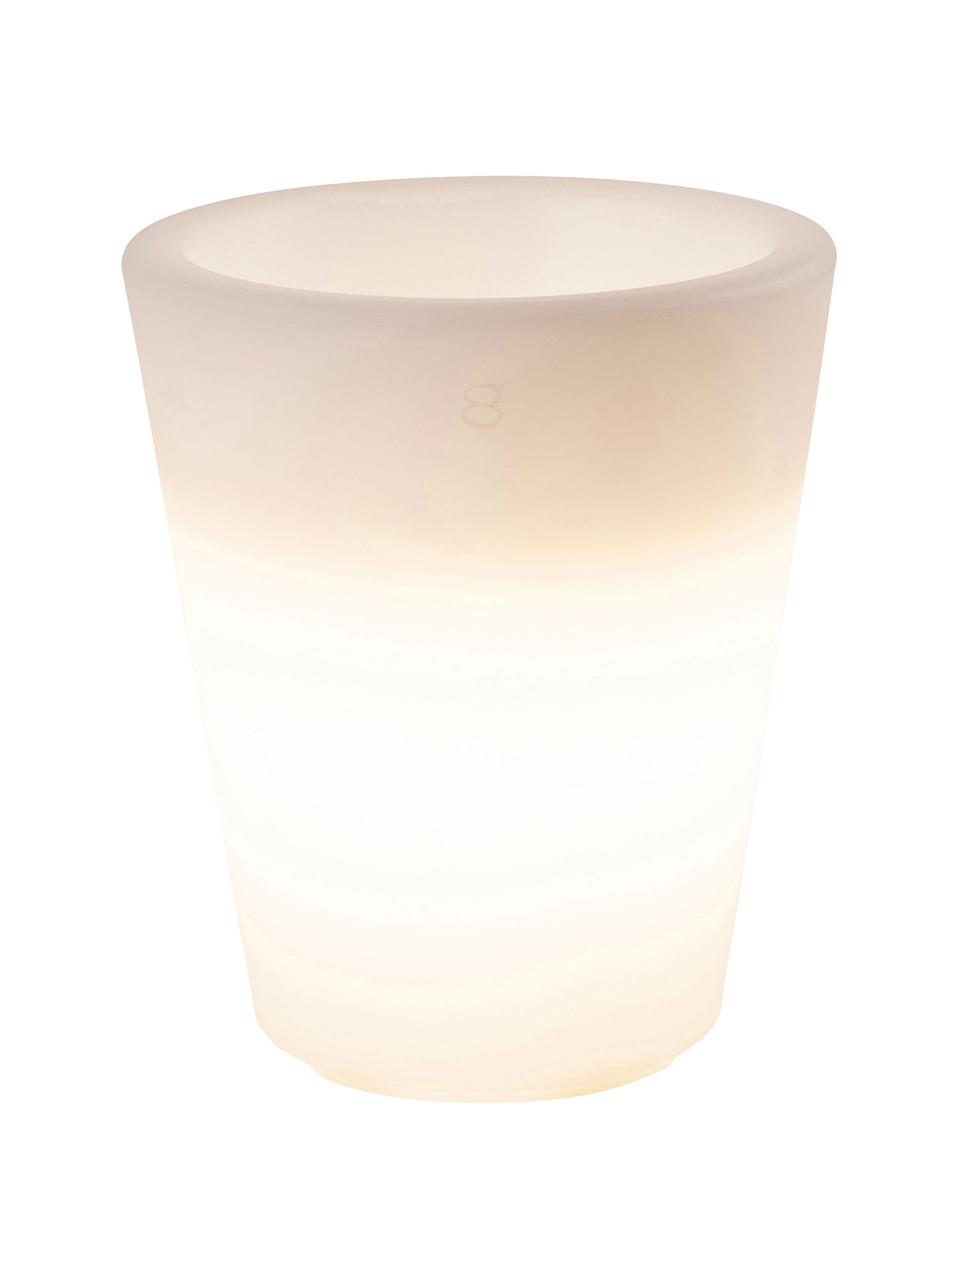 Bodenleuchte Shining Pot mit Stecker, Leuchte: Kunststoff, Weiß, Ø 34 x H 39 cm